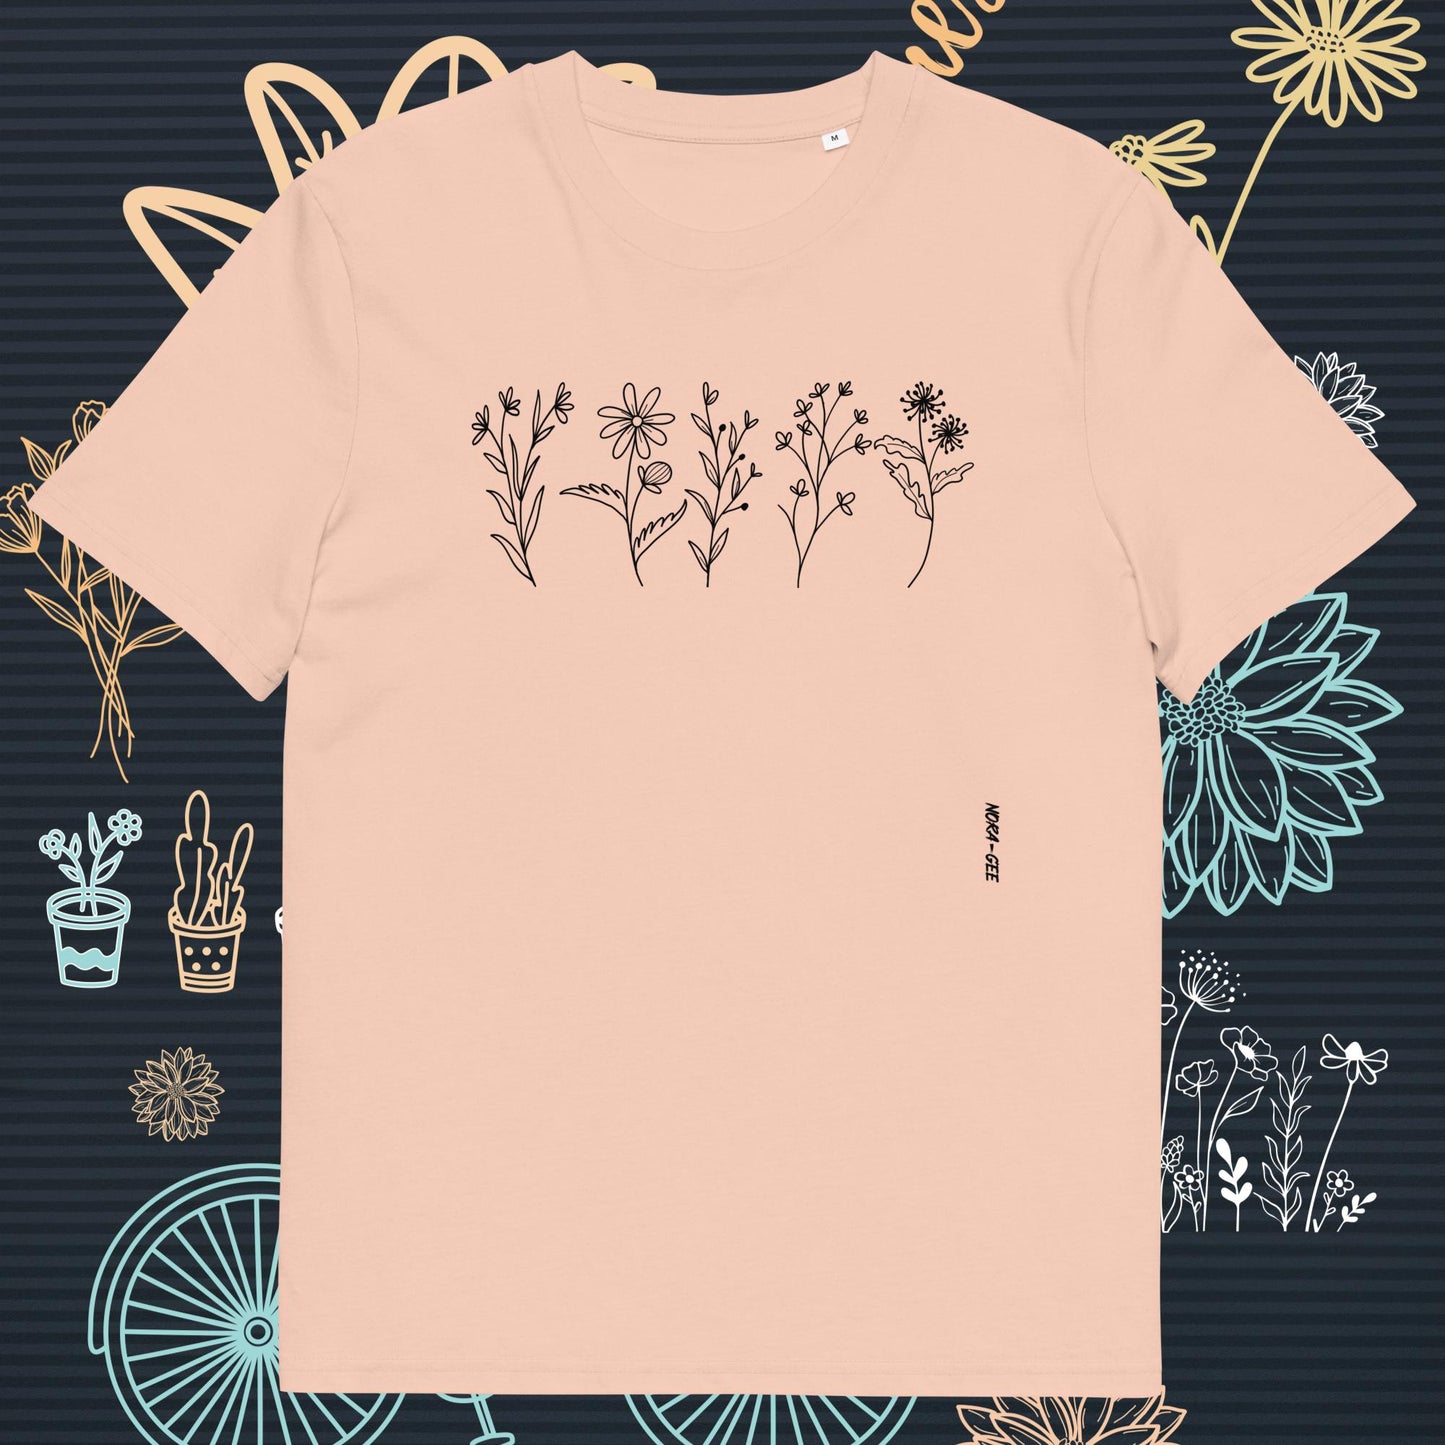 Unisex T-Shirt: Five Wild Meadow Flowers